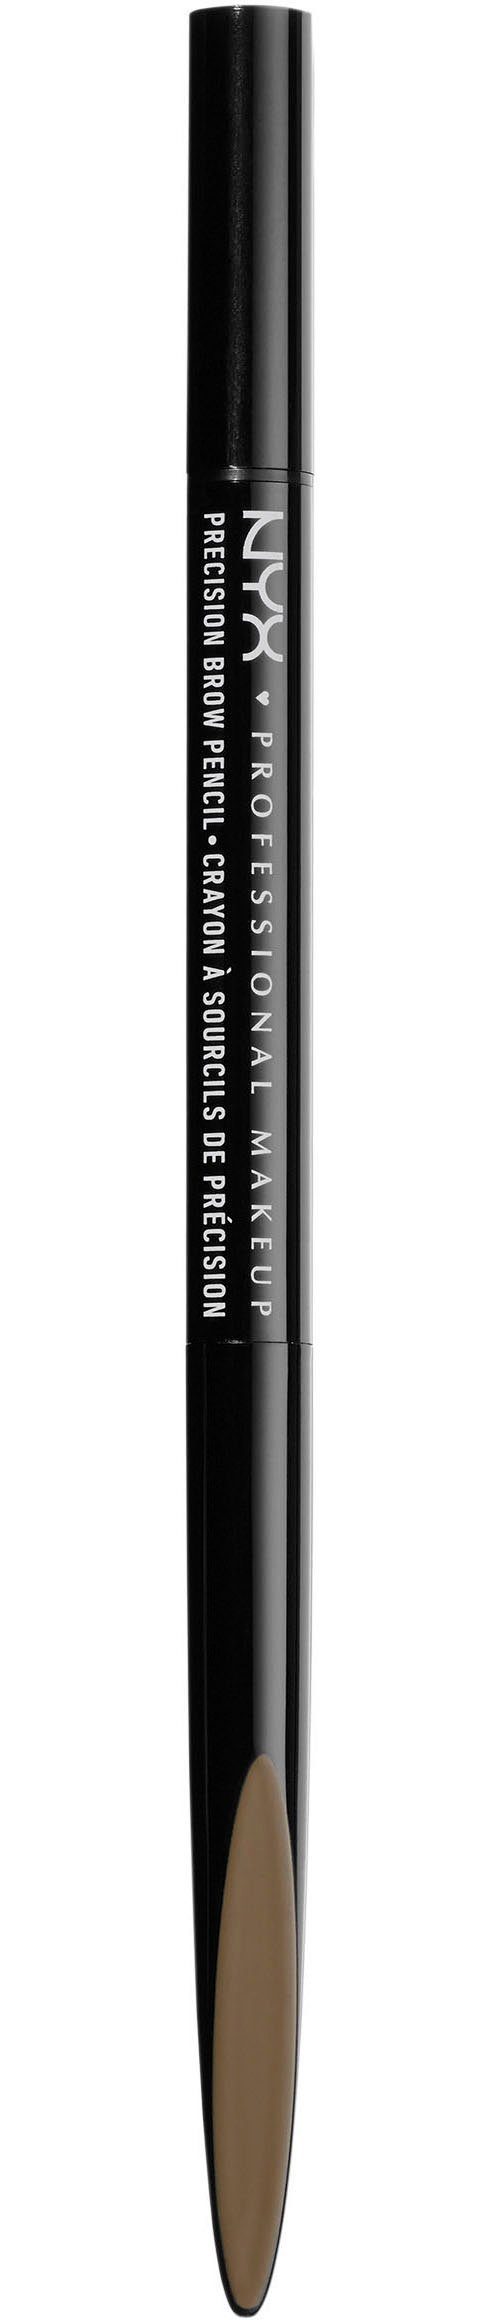 NYX Augenbrauen-Stift Professional Makeup Precision Brow Pencil,  Langanhaltender und natürlicher Look dank blondem Farbton